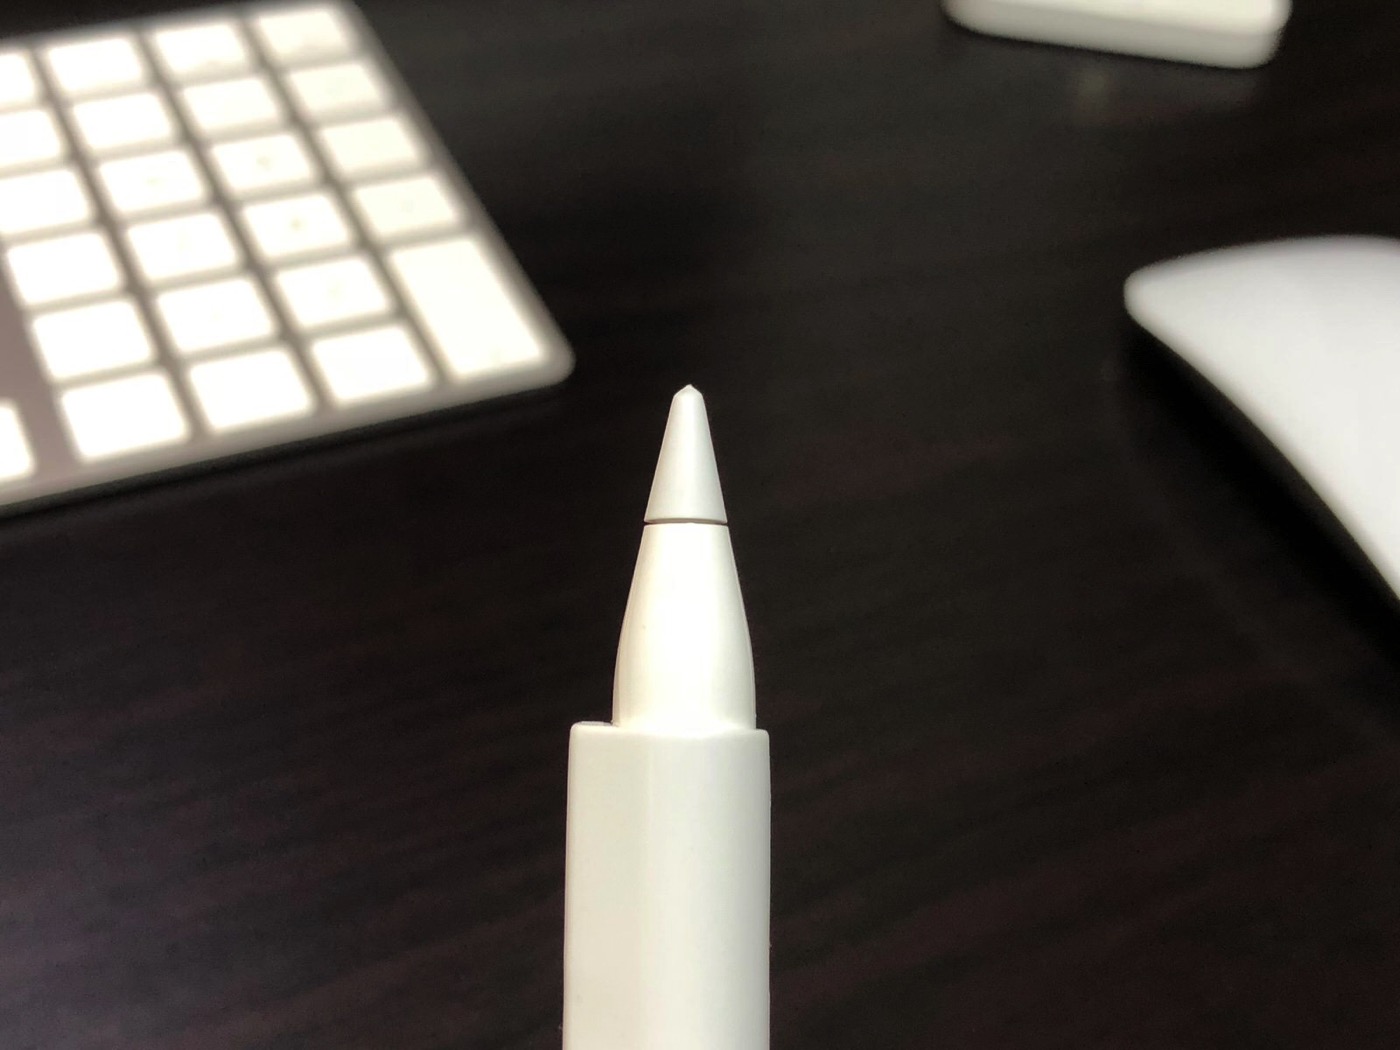 [iPad Pro]マグネット付きシリコン製 Apple Pencil用グリップを使ってiPad Proに書いたら手も疲れなくてとても快適な件